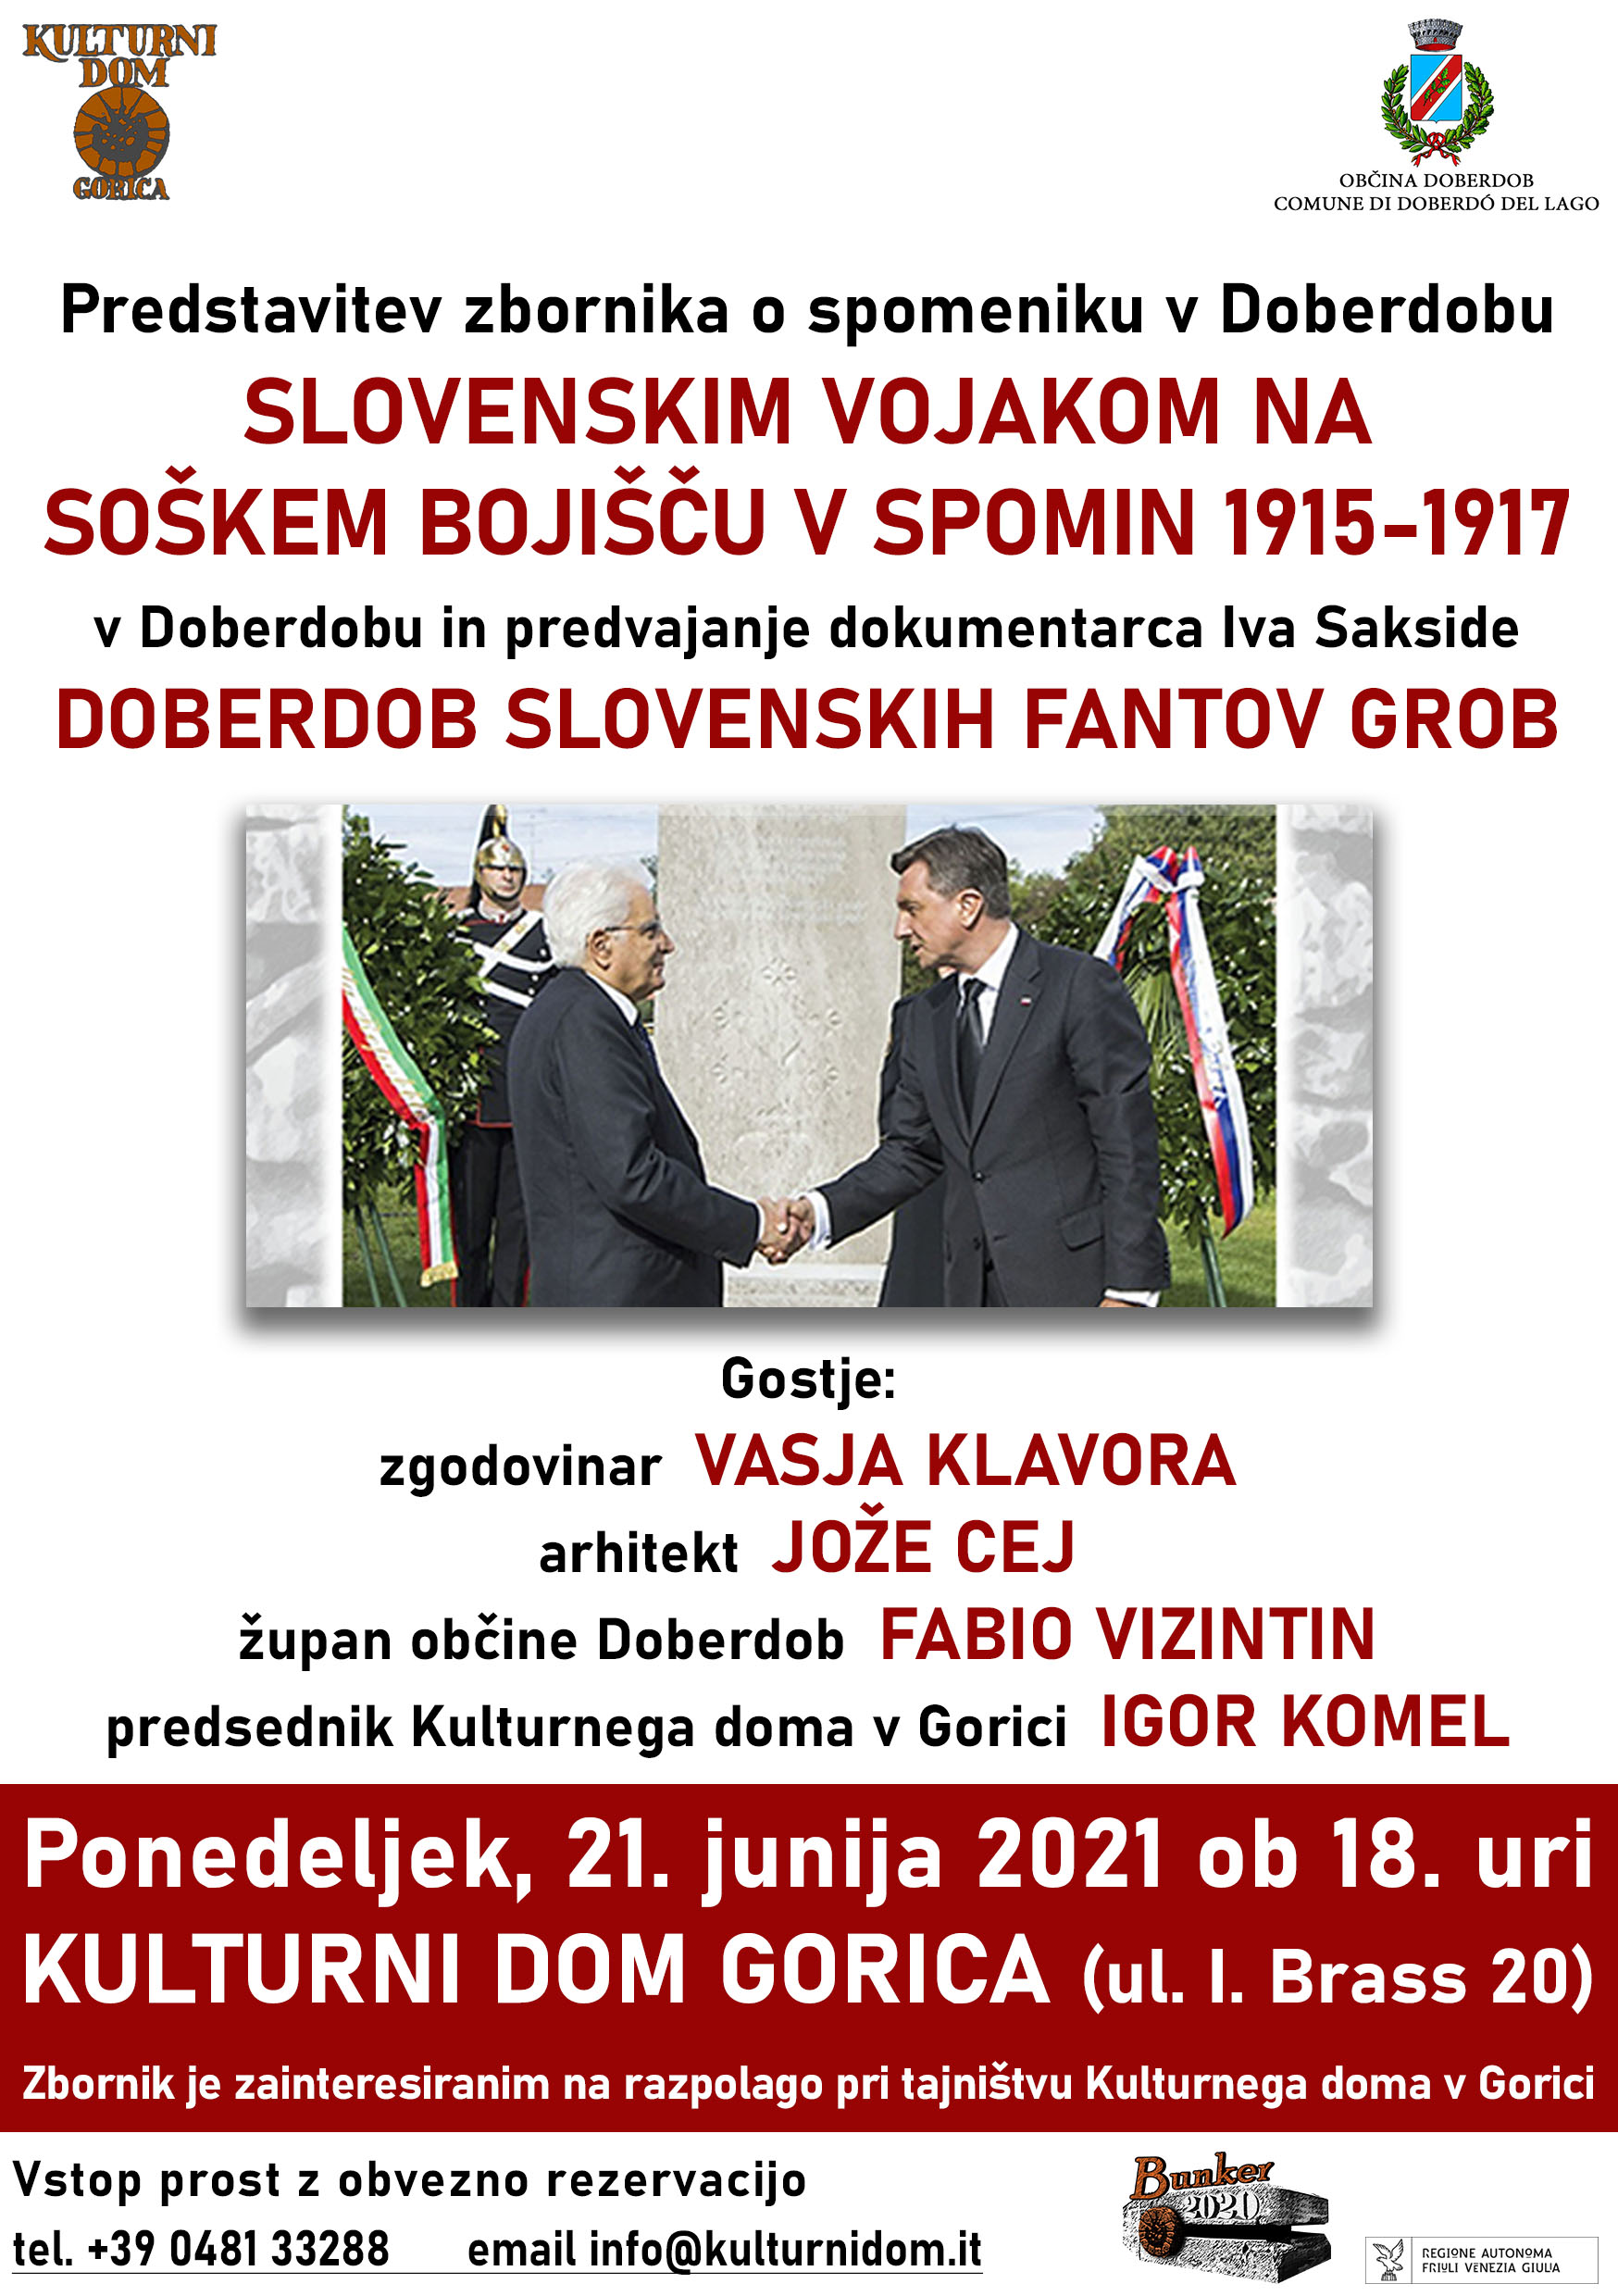 In memoria dei soldati sloveni sul fronte dell’Isonzo 1915-1917